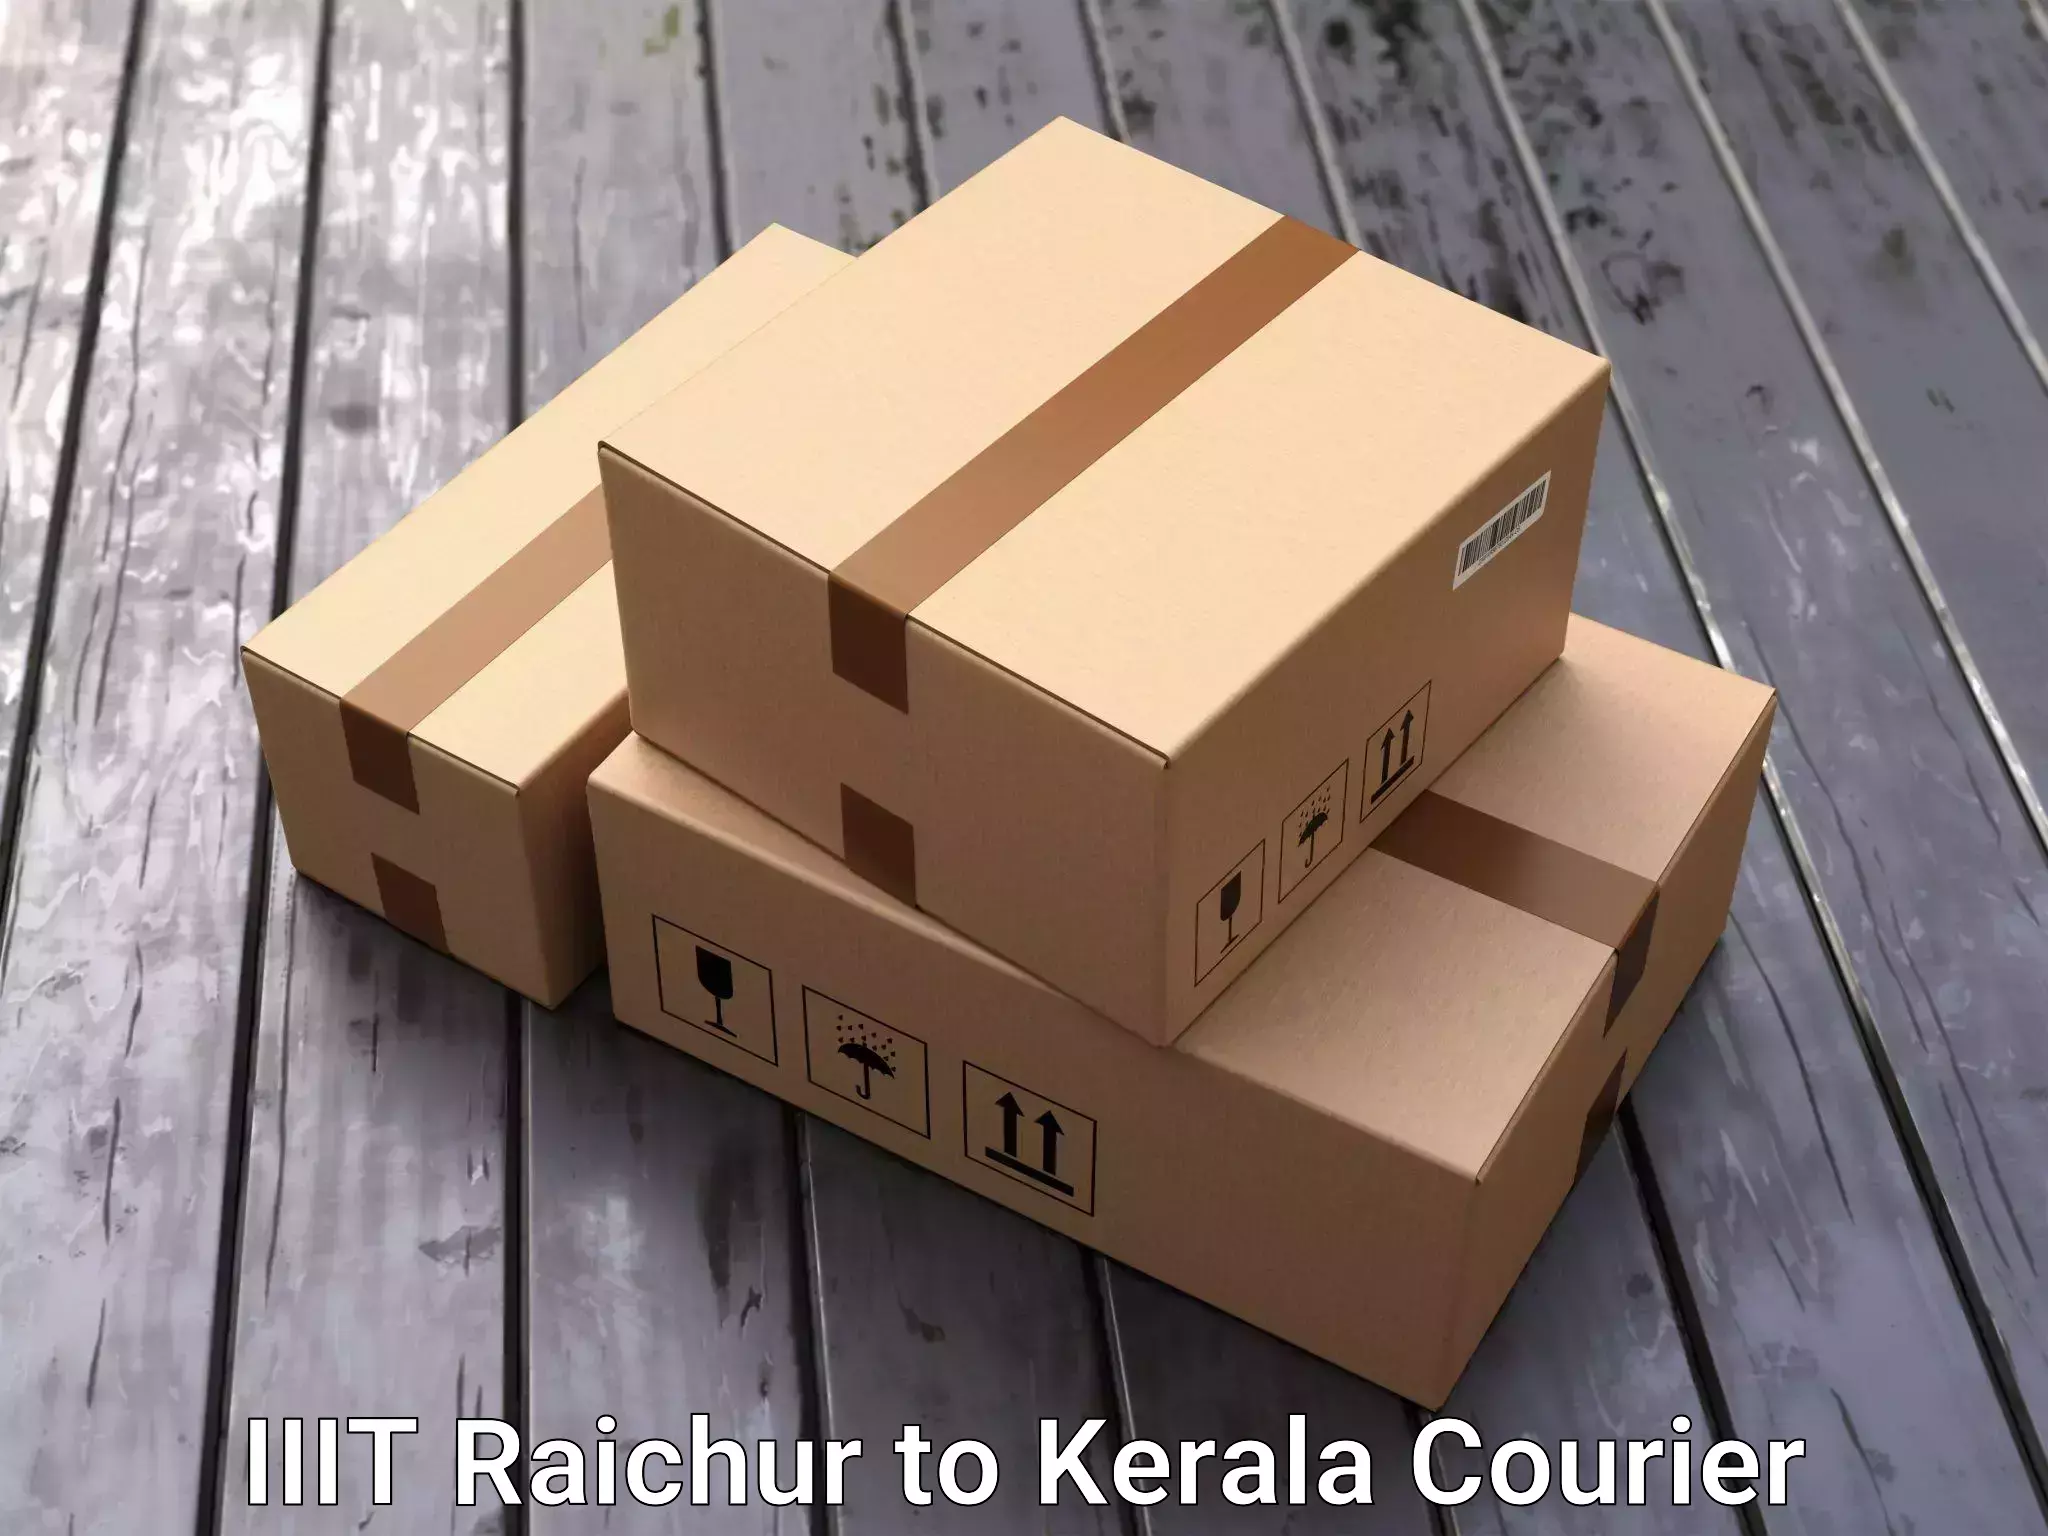 Full-service household moving IIIT Raichur to Palakkad